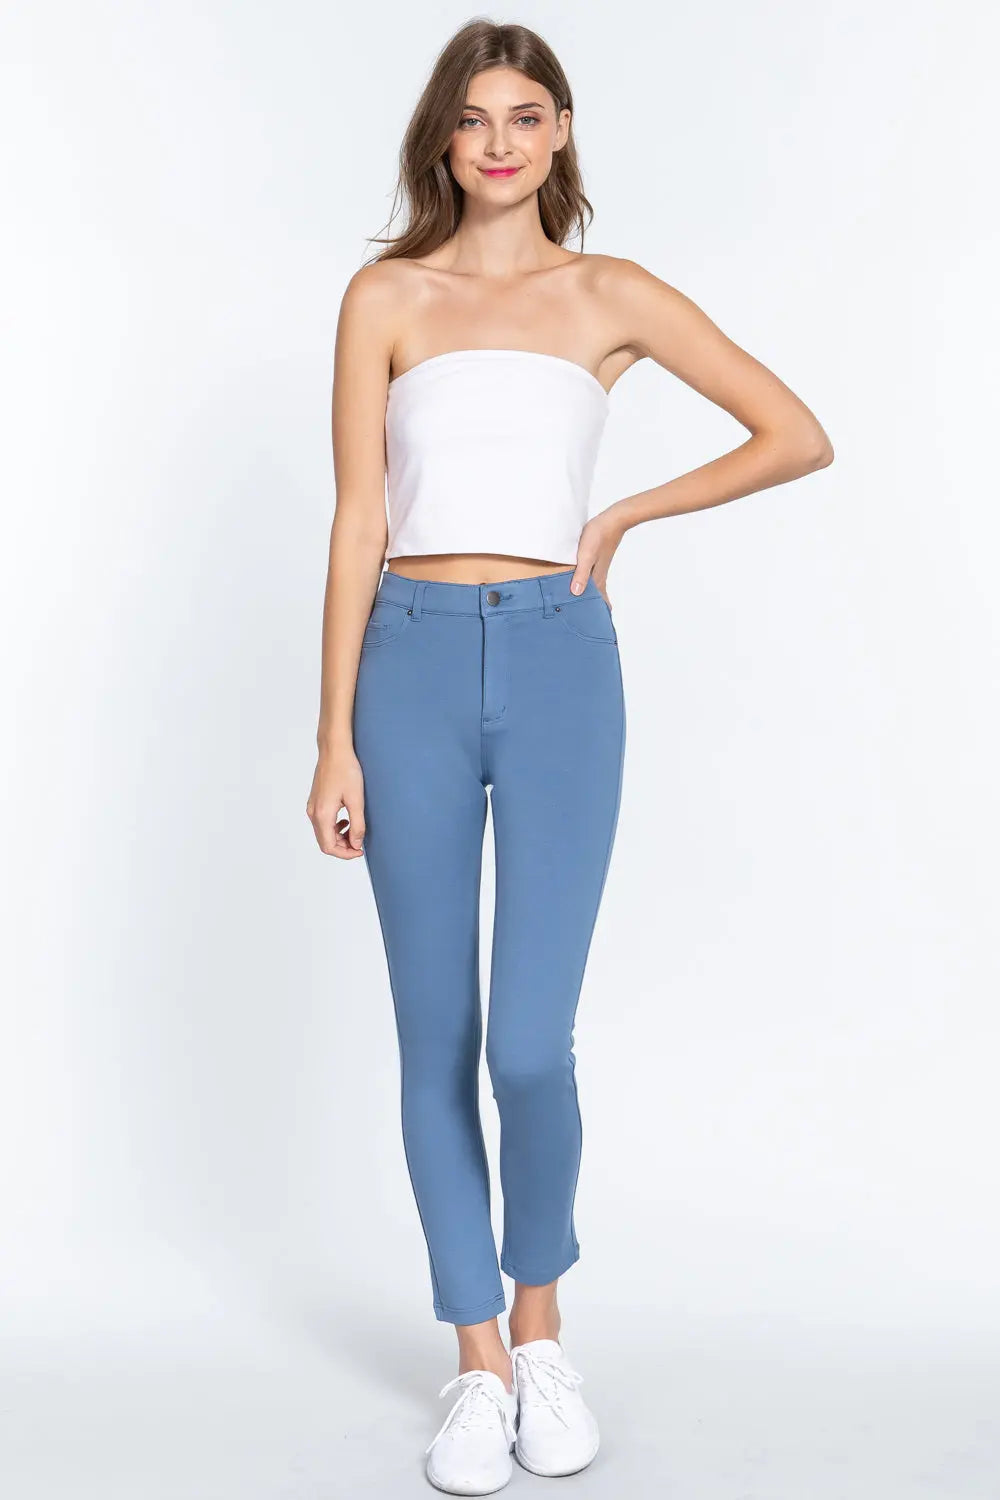 5-pockets Shape Skinny Ponte Mid-rise Pants Sunny EvE Fashion